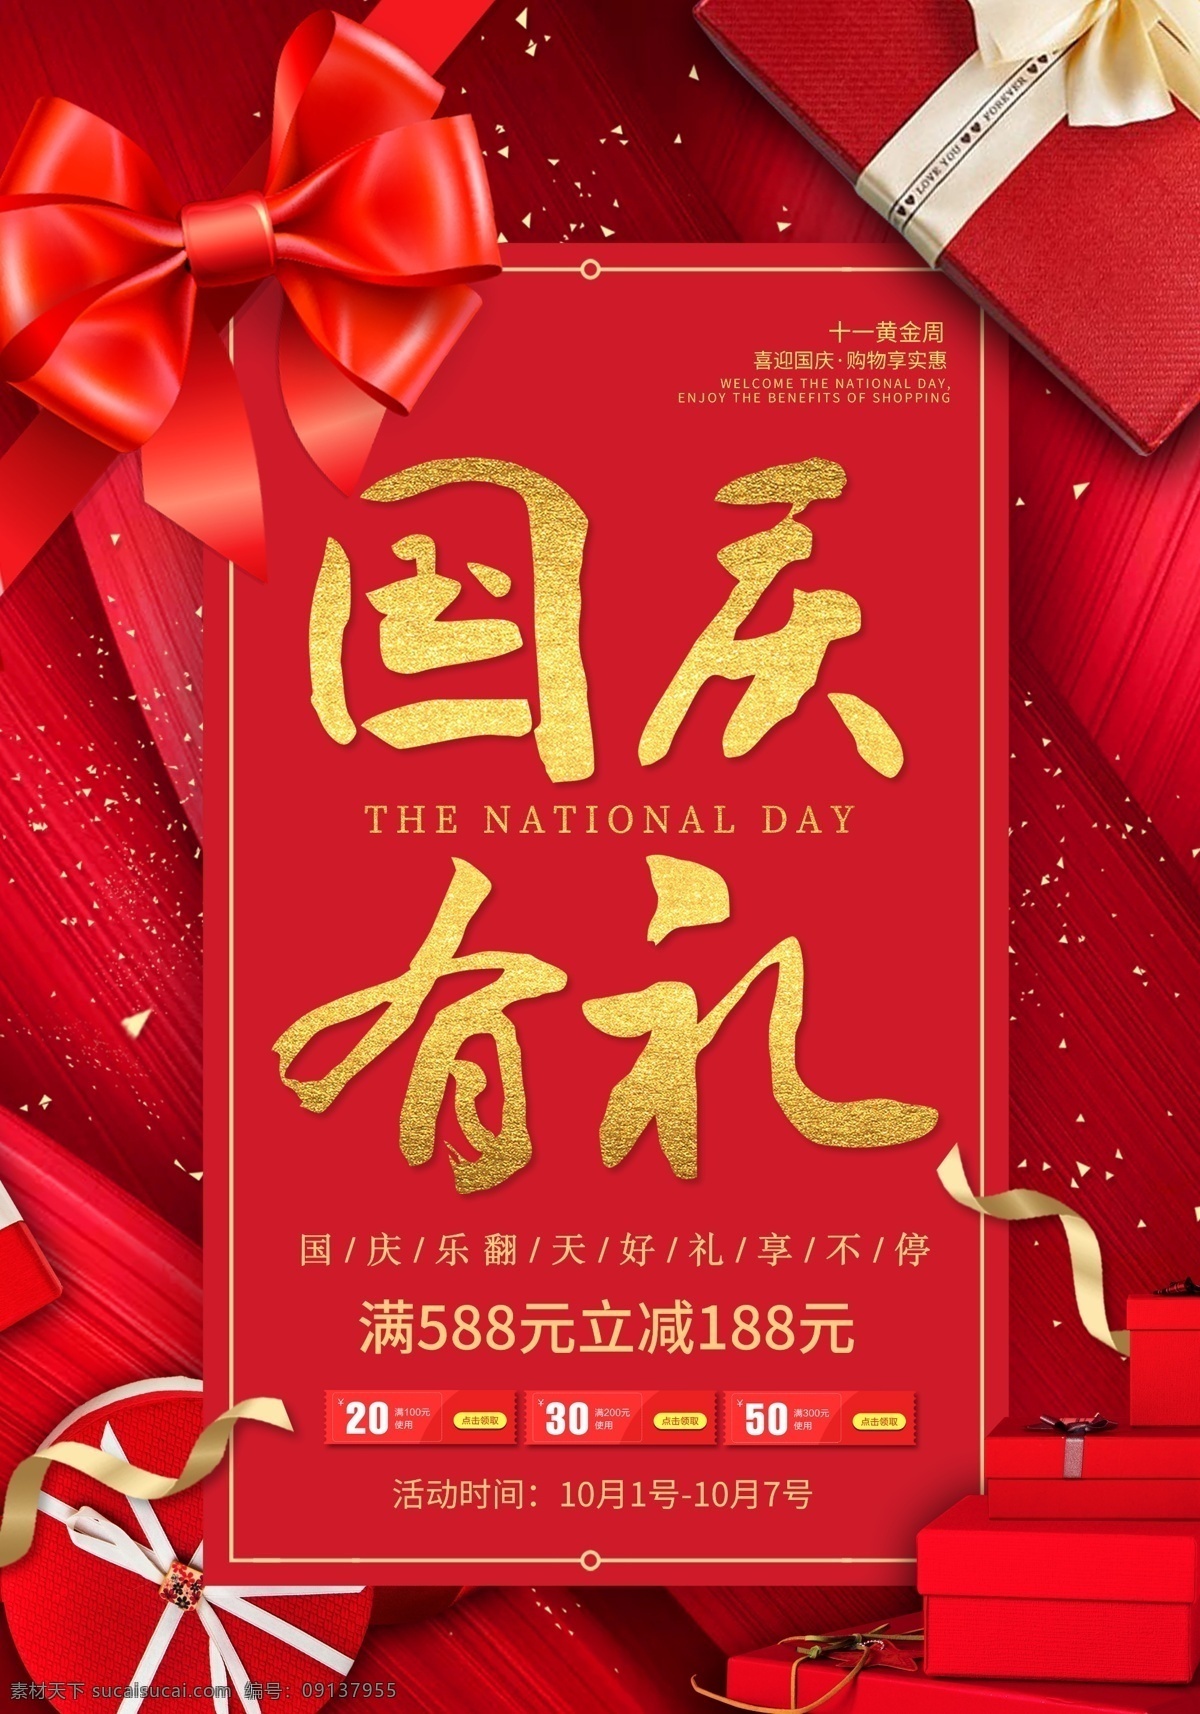 国庆 节日 活动 宣传海报 宣传 海报 传统节日